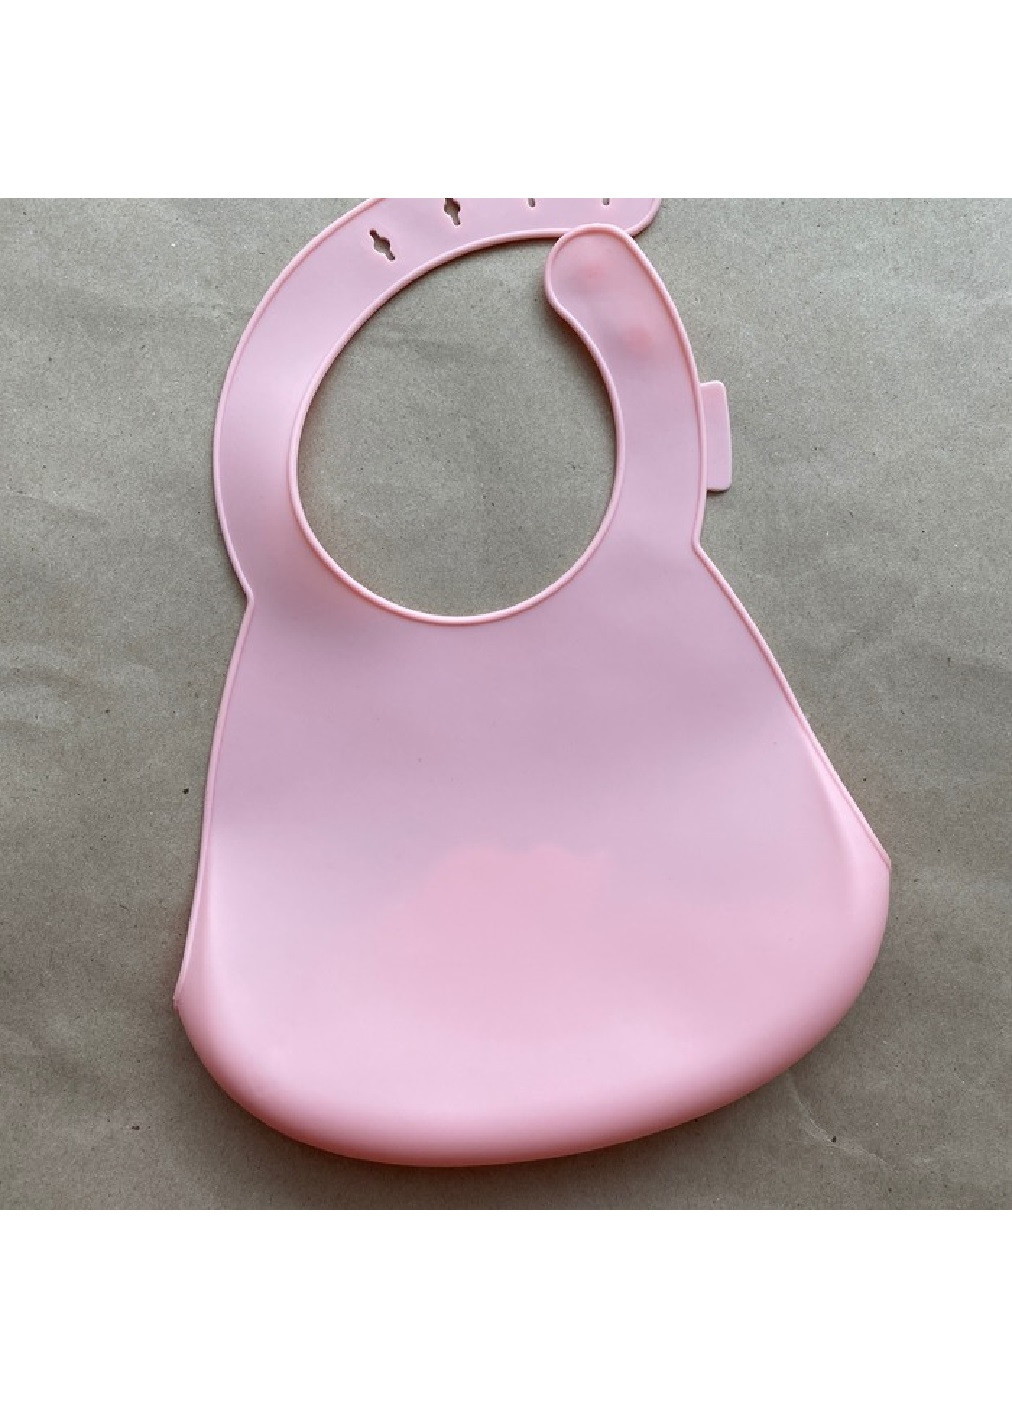 Дитячий силіконовий м'який слинявчик нагрудник з тисненим малюнком для дітей малюків 30х22 см (475021-Prob) Рожевий Unbranded (260668652)